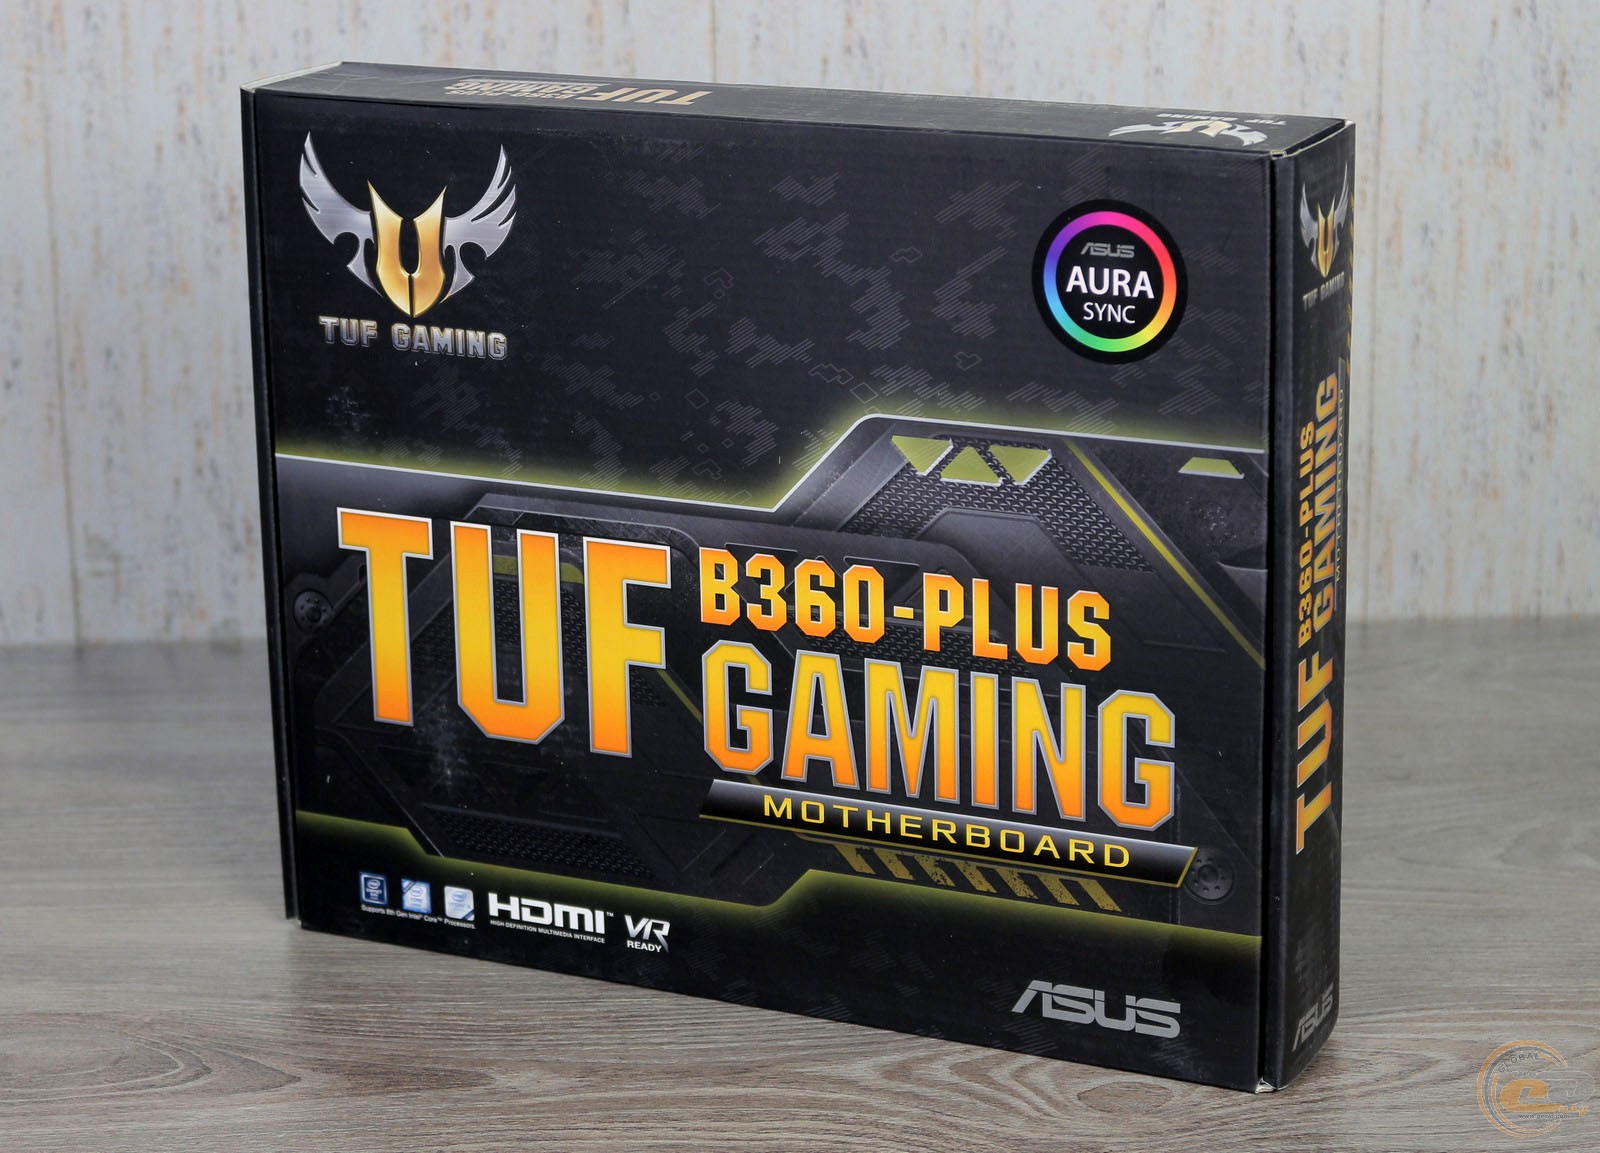 Tuf b360 pro gaming